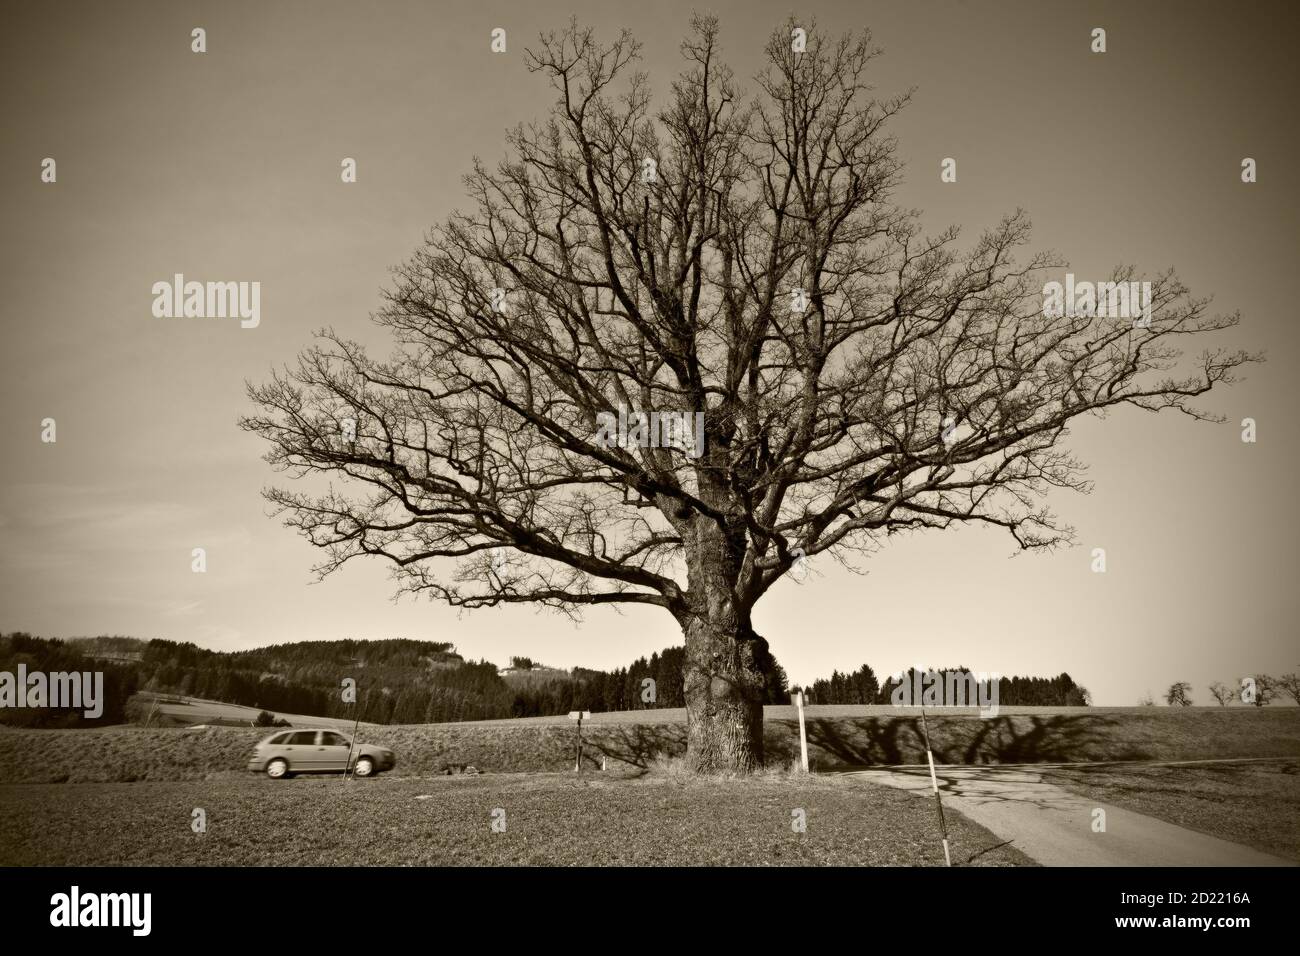 LASSBERG, AUSTRIA - 29 DE MARZO de 2014: Roble pedunculado (quercus robur), llamado 'Weissenoacha' uno de los árboles más grandes de Austria con una circunferencia de casi 7 metros Foto de stock